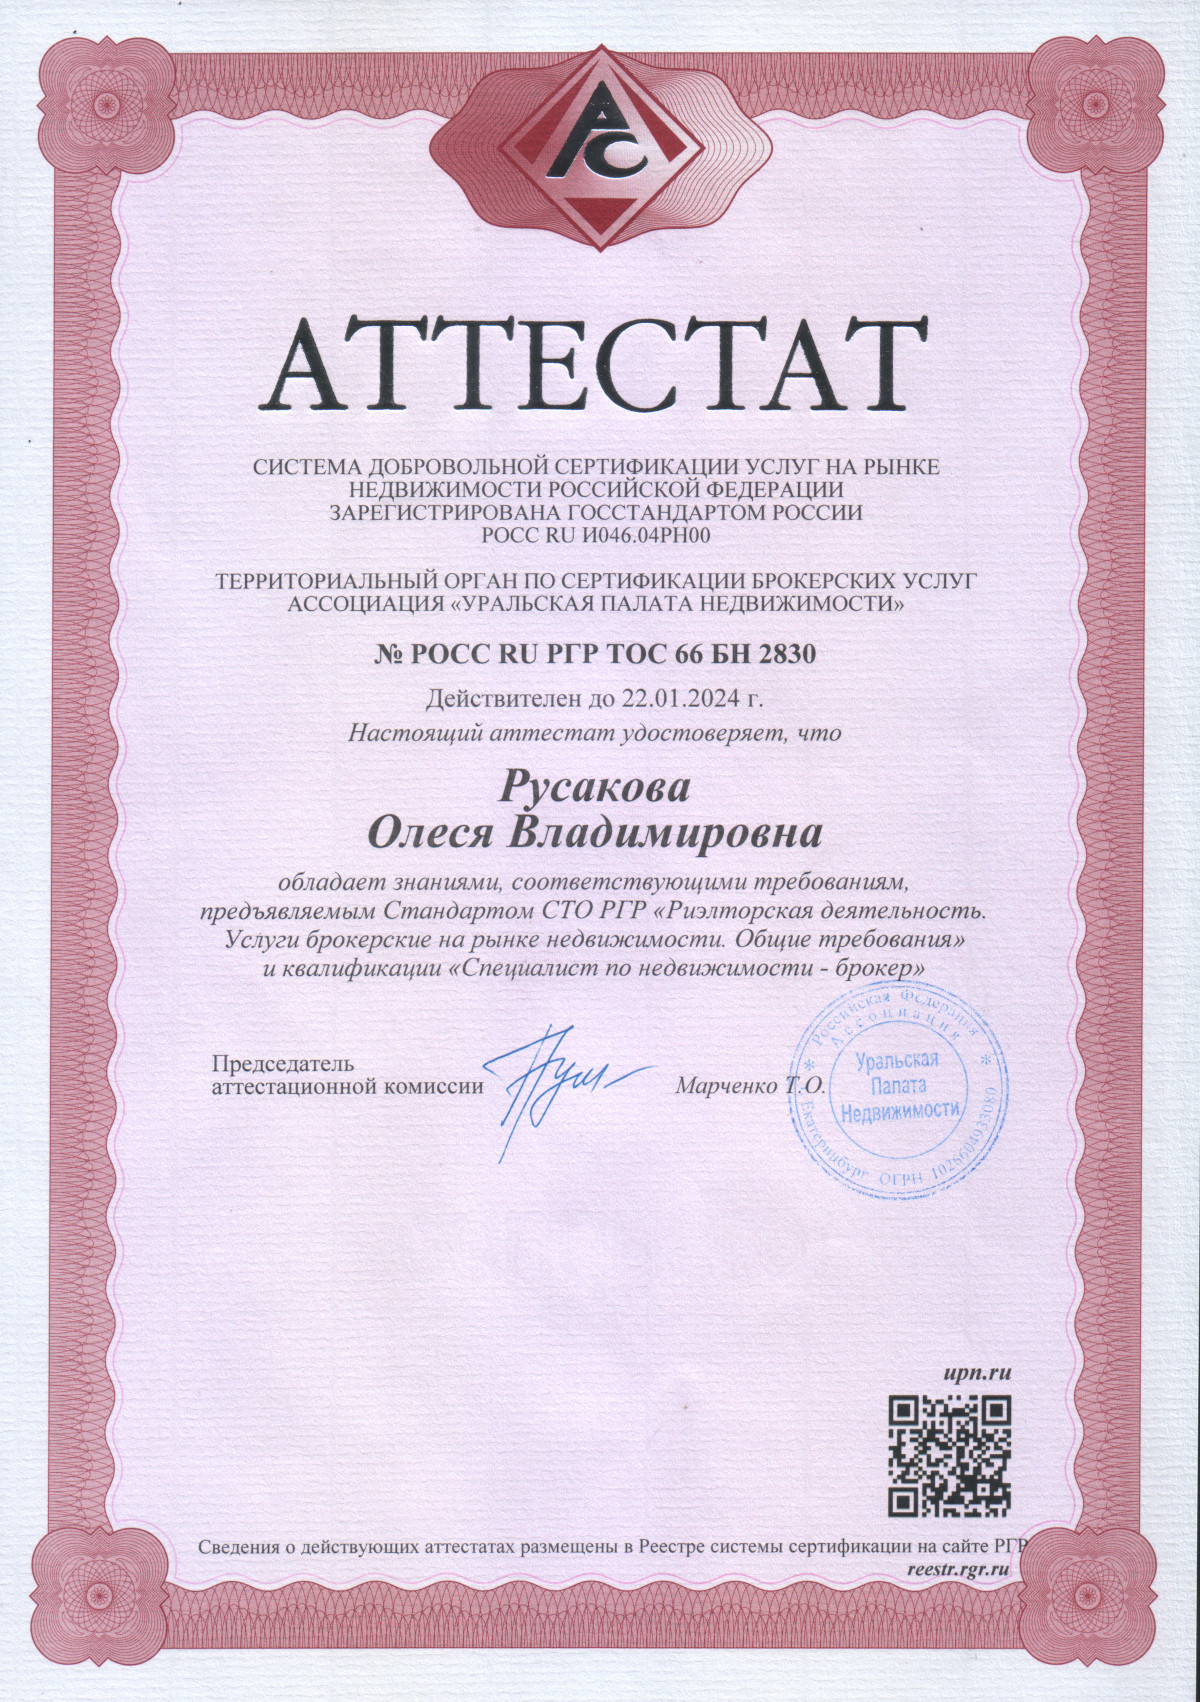 Аттестат Сертифицированного брокера